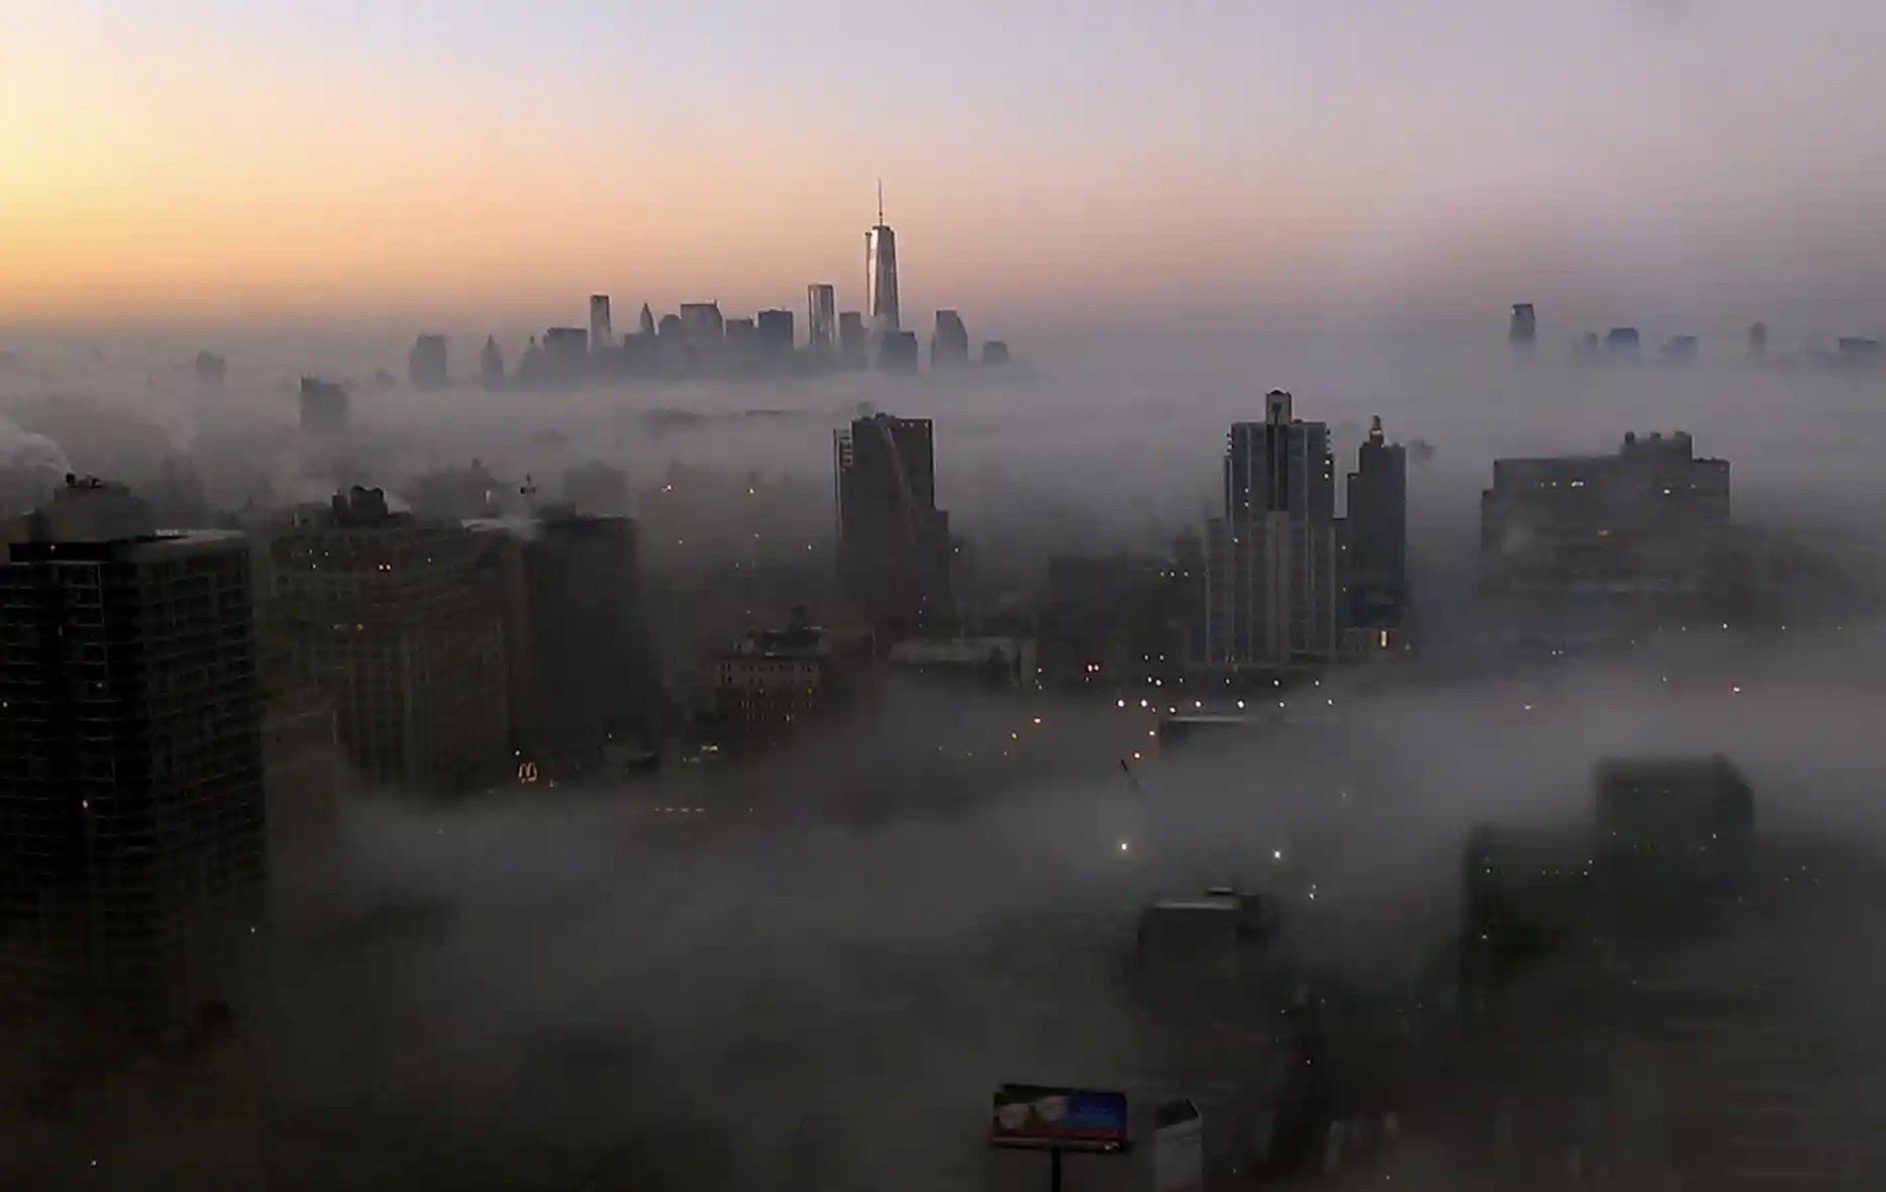 View - Sương mù dày đặc khiến New York như lơ lửng trên mây